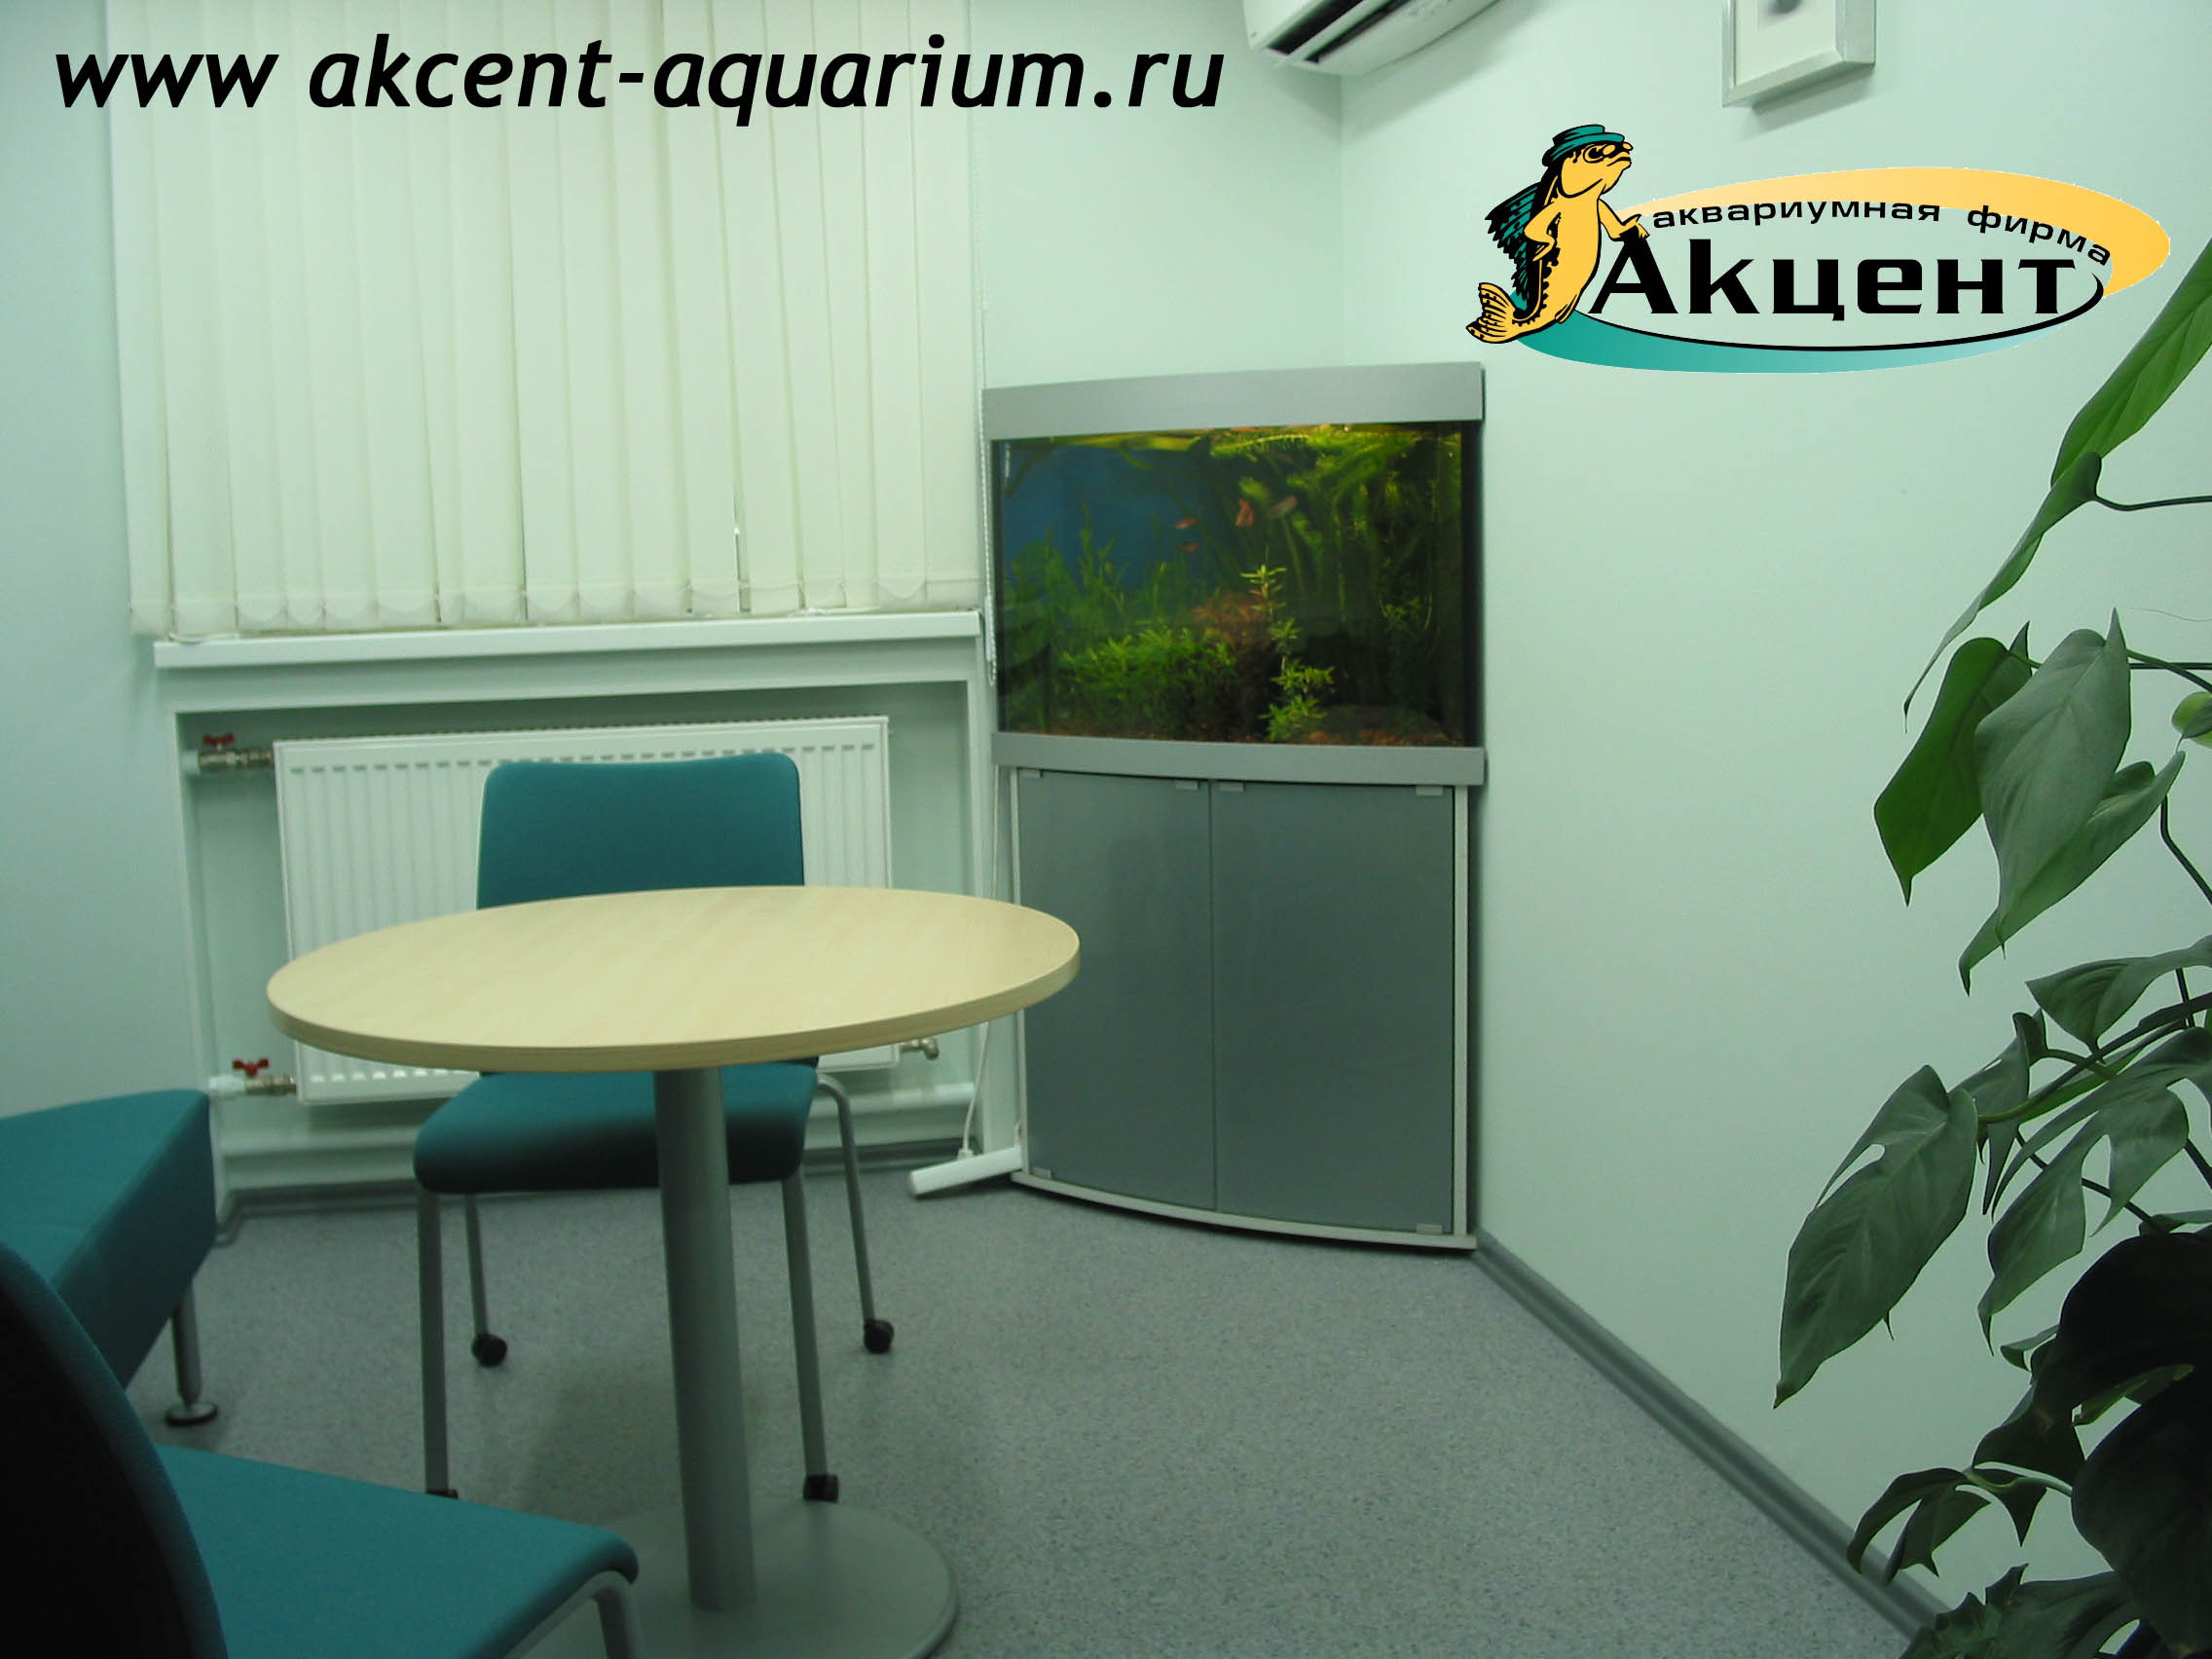 Акцент-аквариум, аквариум угловой 170 литров, с гнутым передним стеклом офис